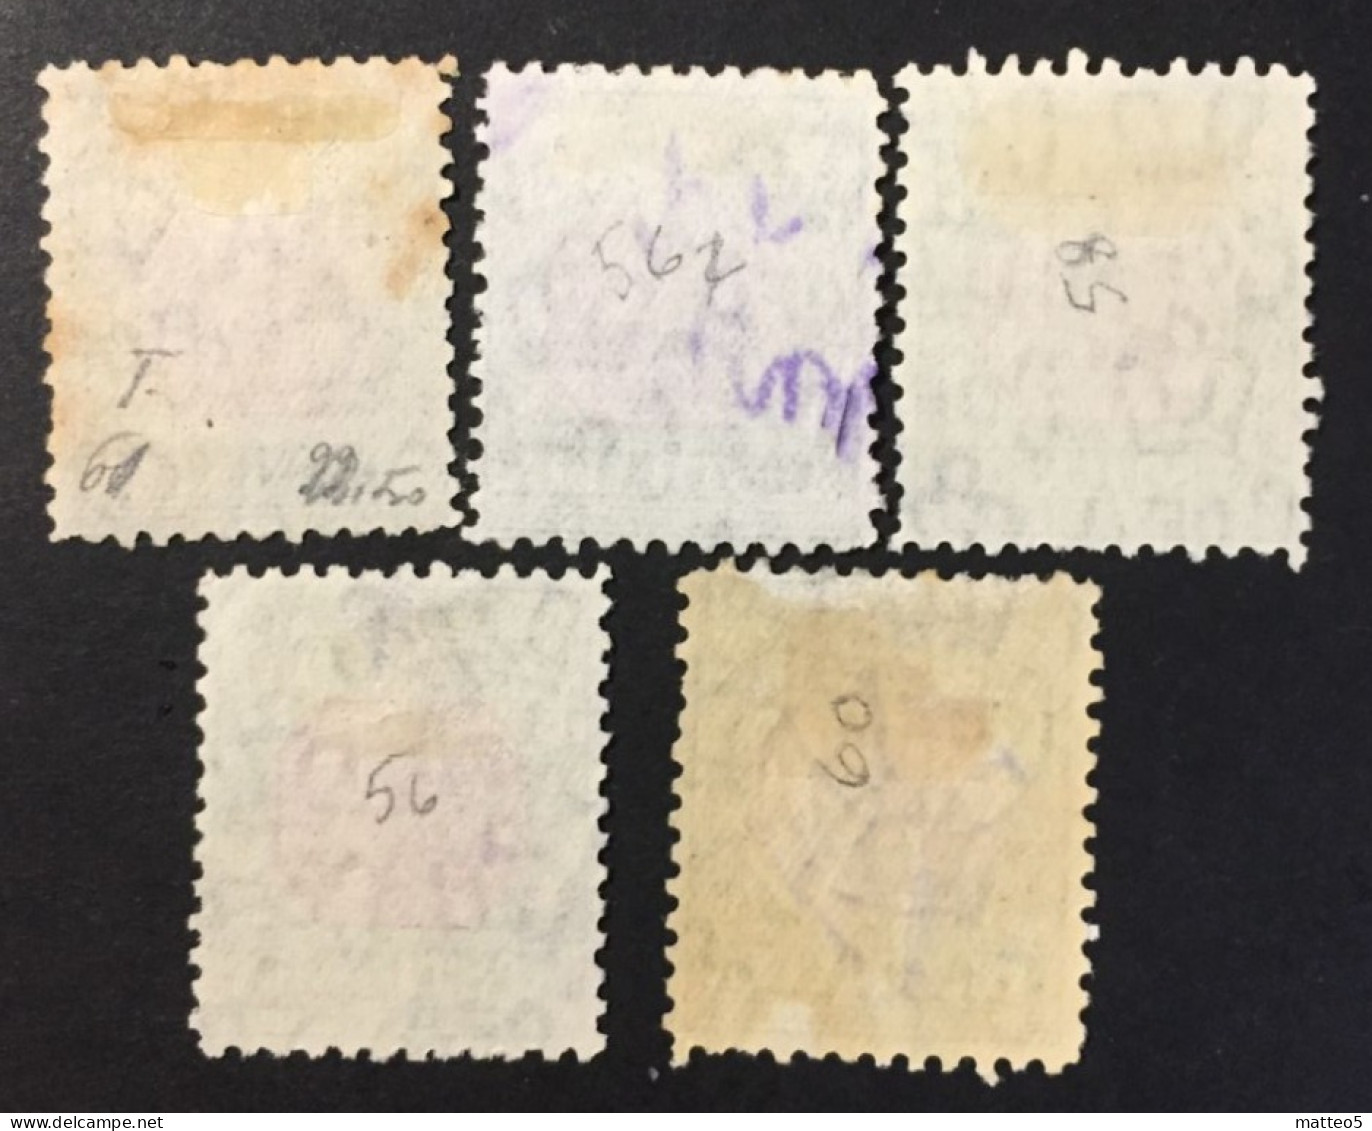 1932 /38 - Australia - Postage Due Stamp - 1D,2D,1/2D,4D,1/ - Used - Strafport